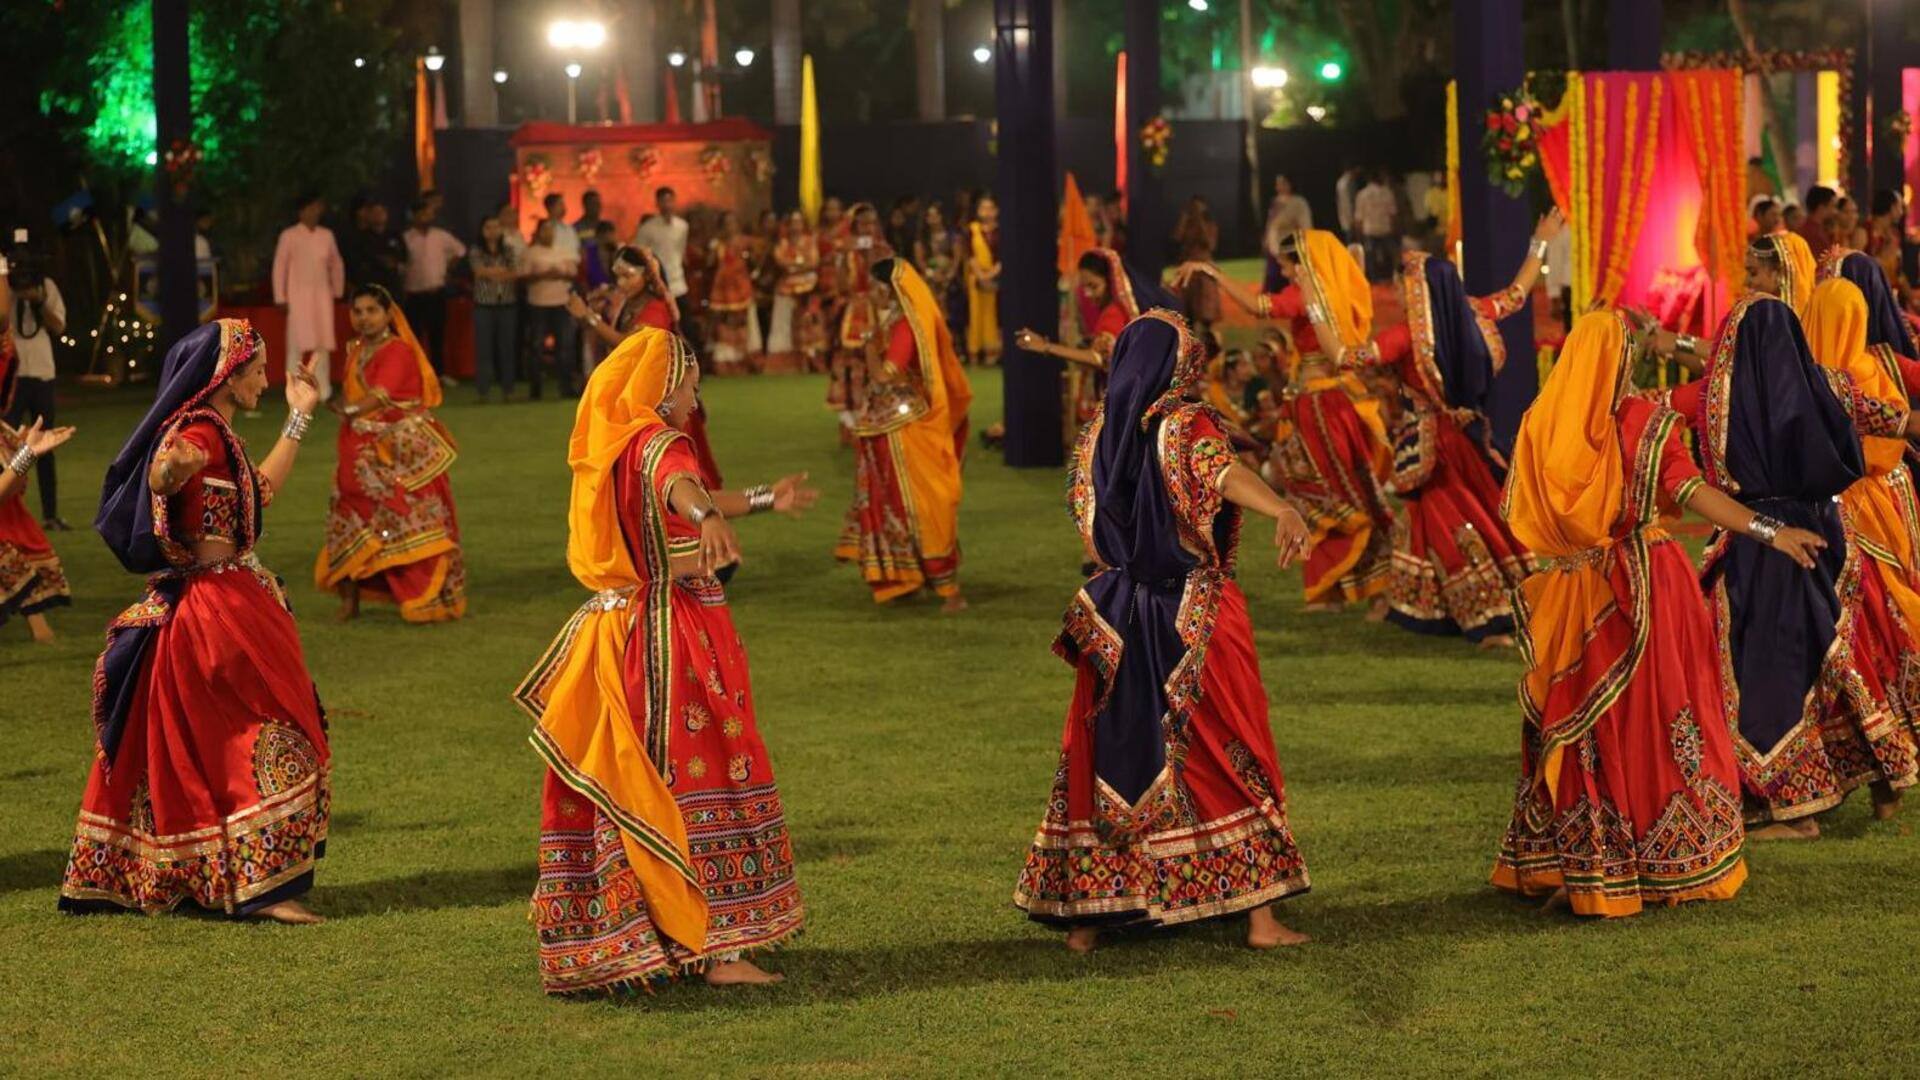 Garbha : గుజరాత్ సంప్రదాయ నృత్యానికి ప్రపంచ కీర్తి.. గార్బాకు యునెస్కో గుర్తింపు